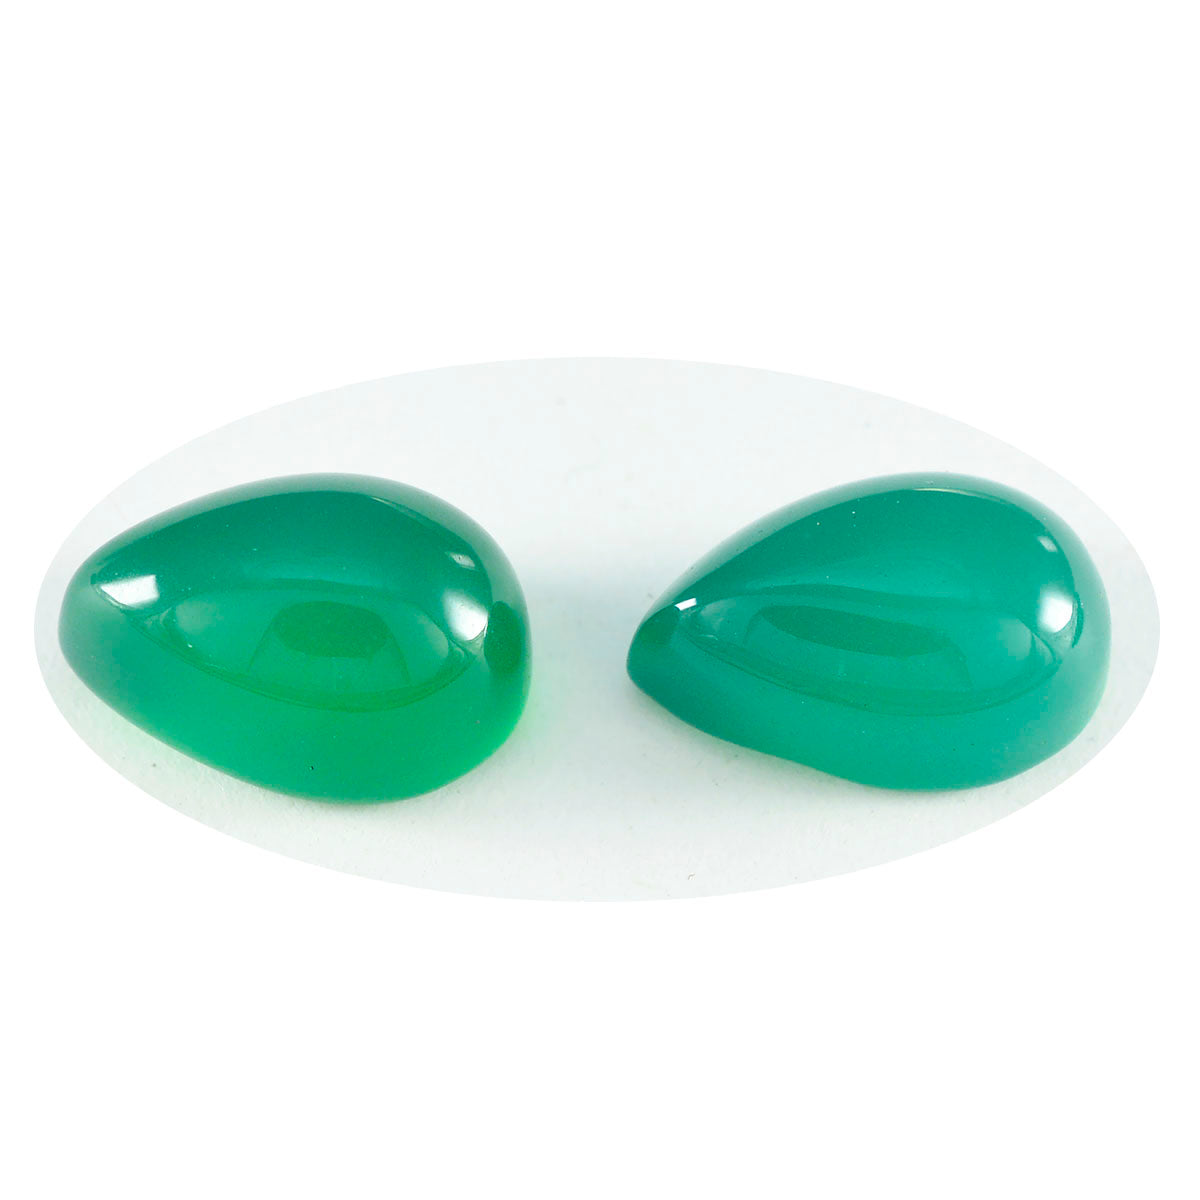 Riyogems 1 Stück grüner Onyx-Cabochon, 6 x 9 mm, Birnenform, Stein von erstaunlicher Qualität